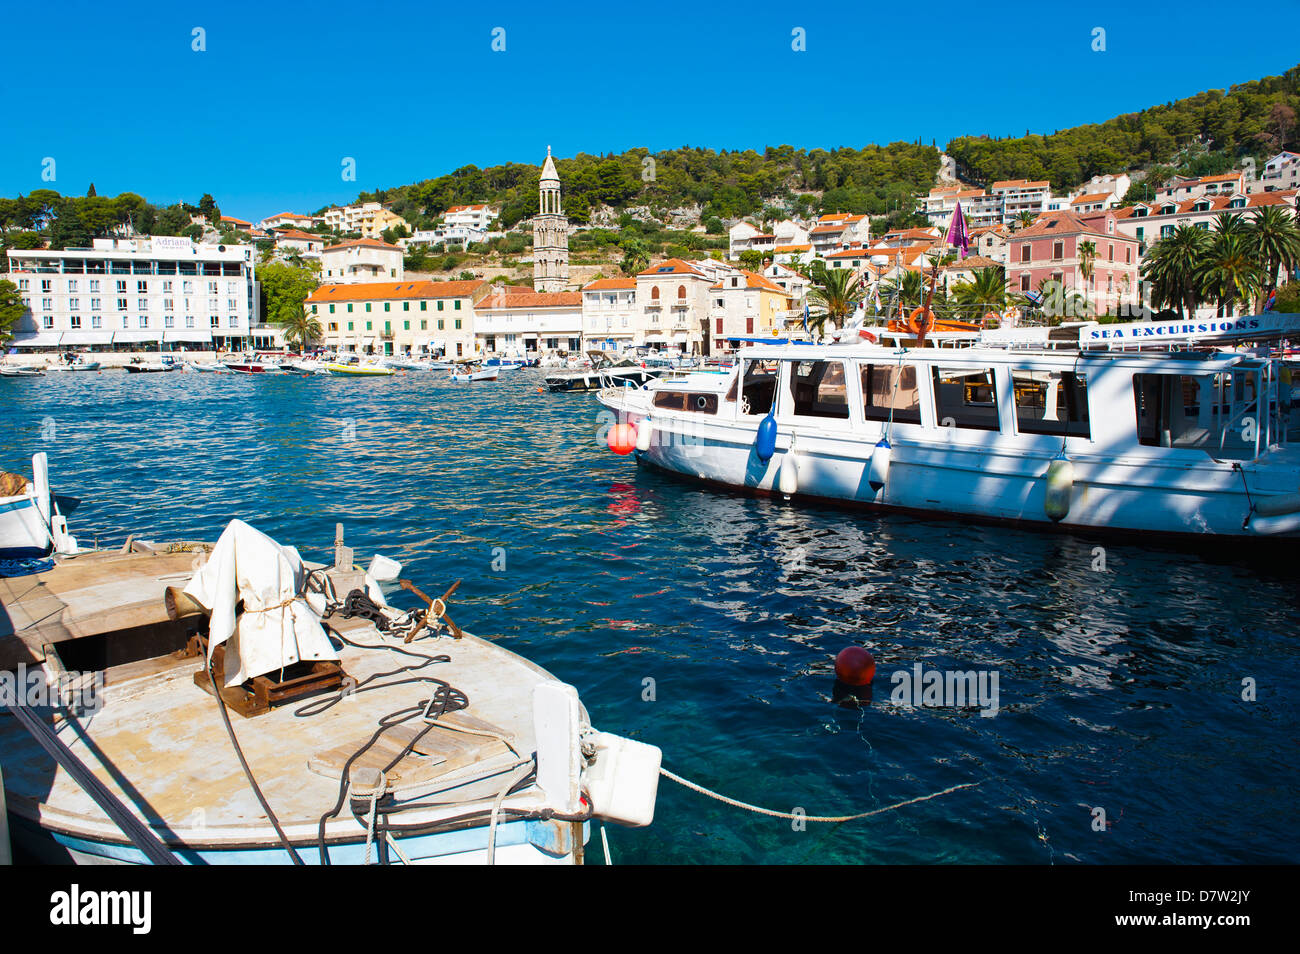 Le port de Hvar, Hvar, île de la côte dalmate, Adriatique, Croatie Banque D'Images